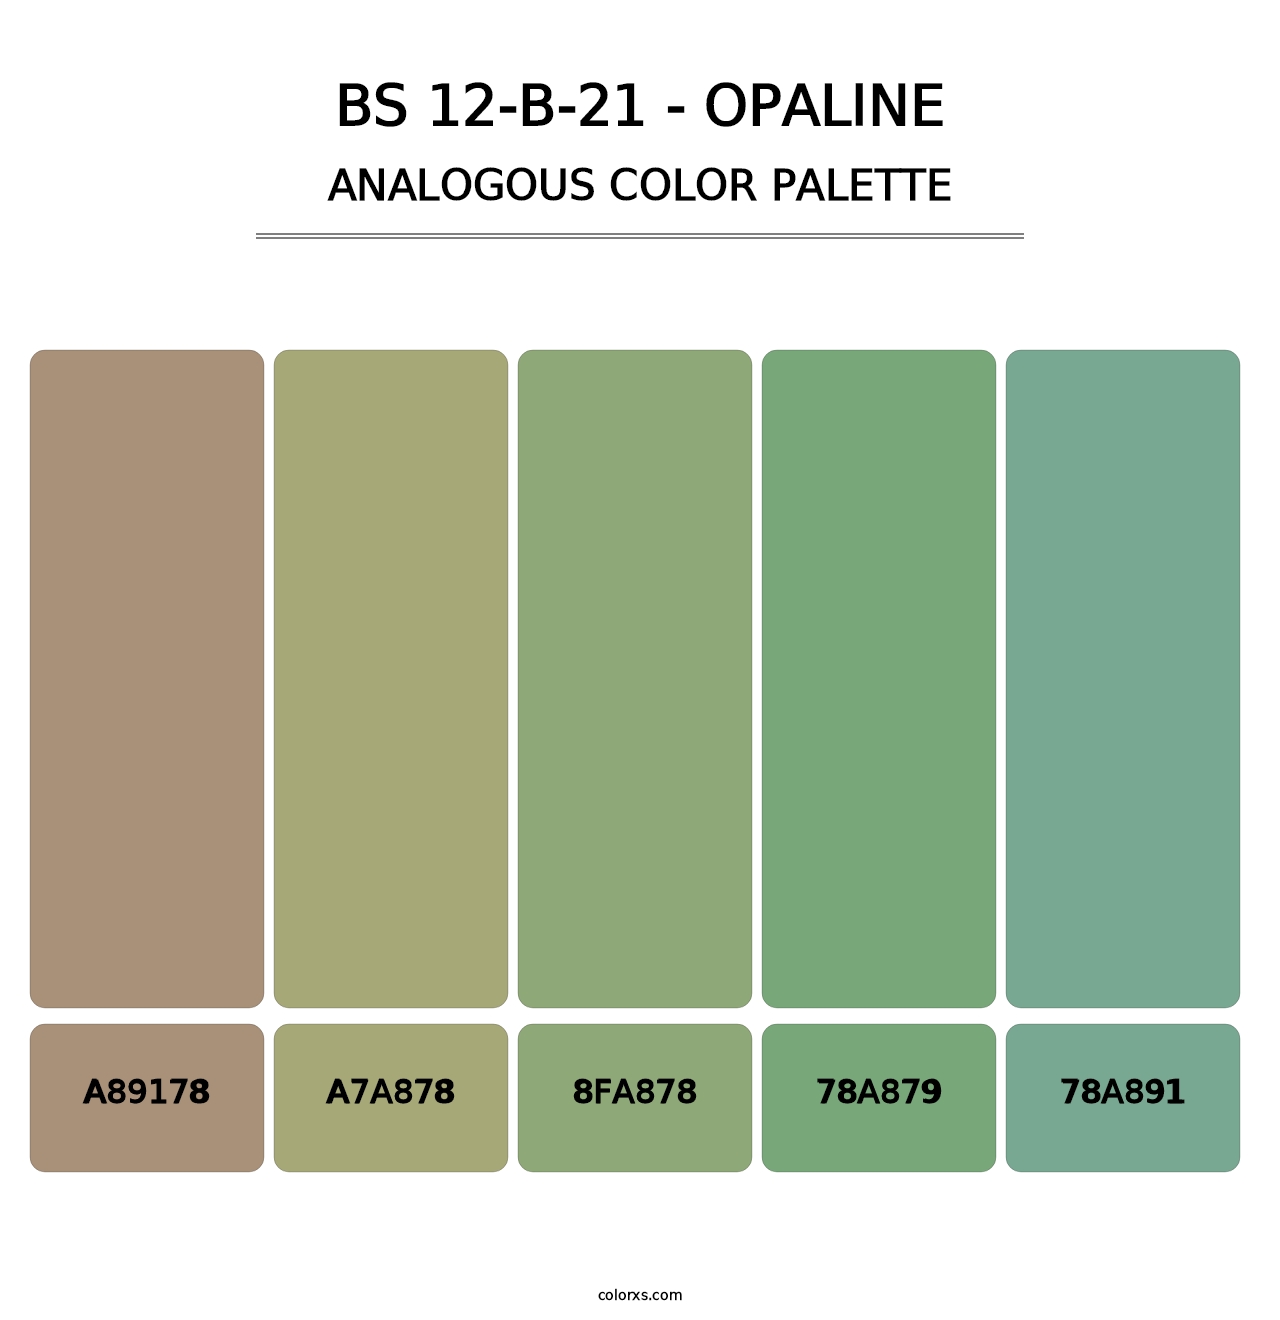 BS 12-B-21 - Opaline - Analogous Color Palette